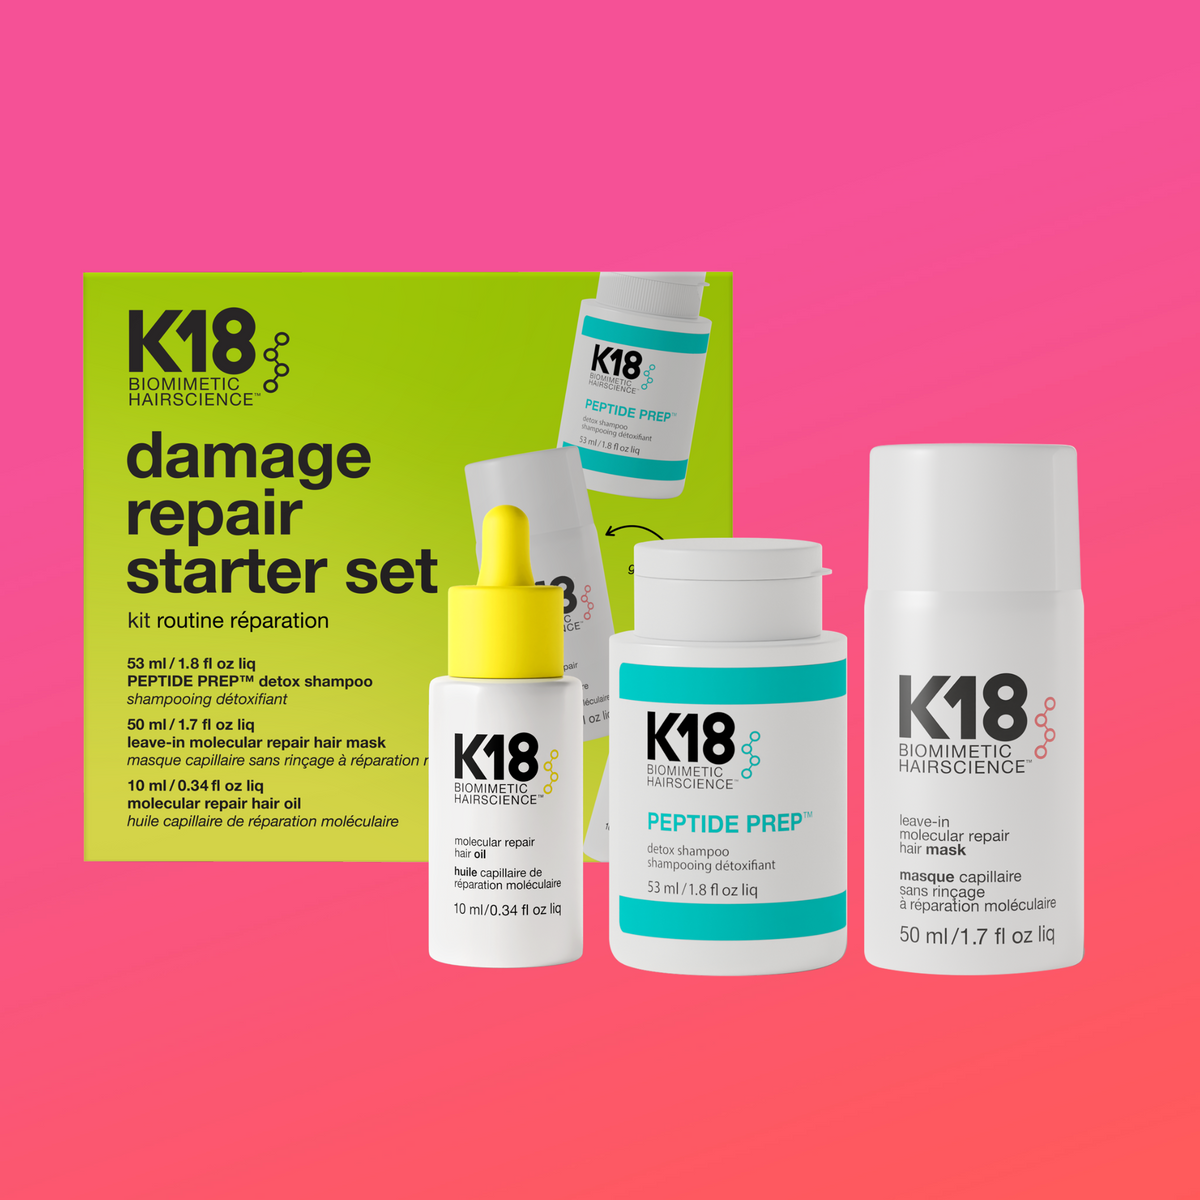 K18 damage repair starter set – K18HAIR UK